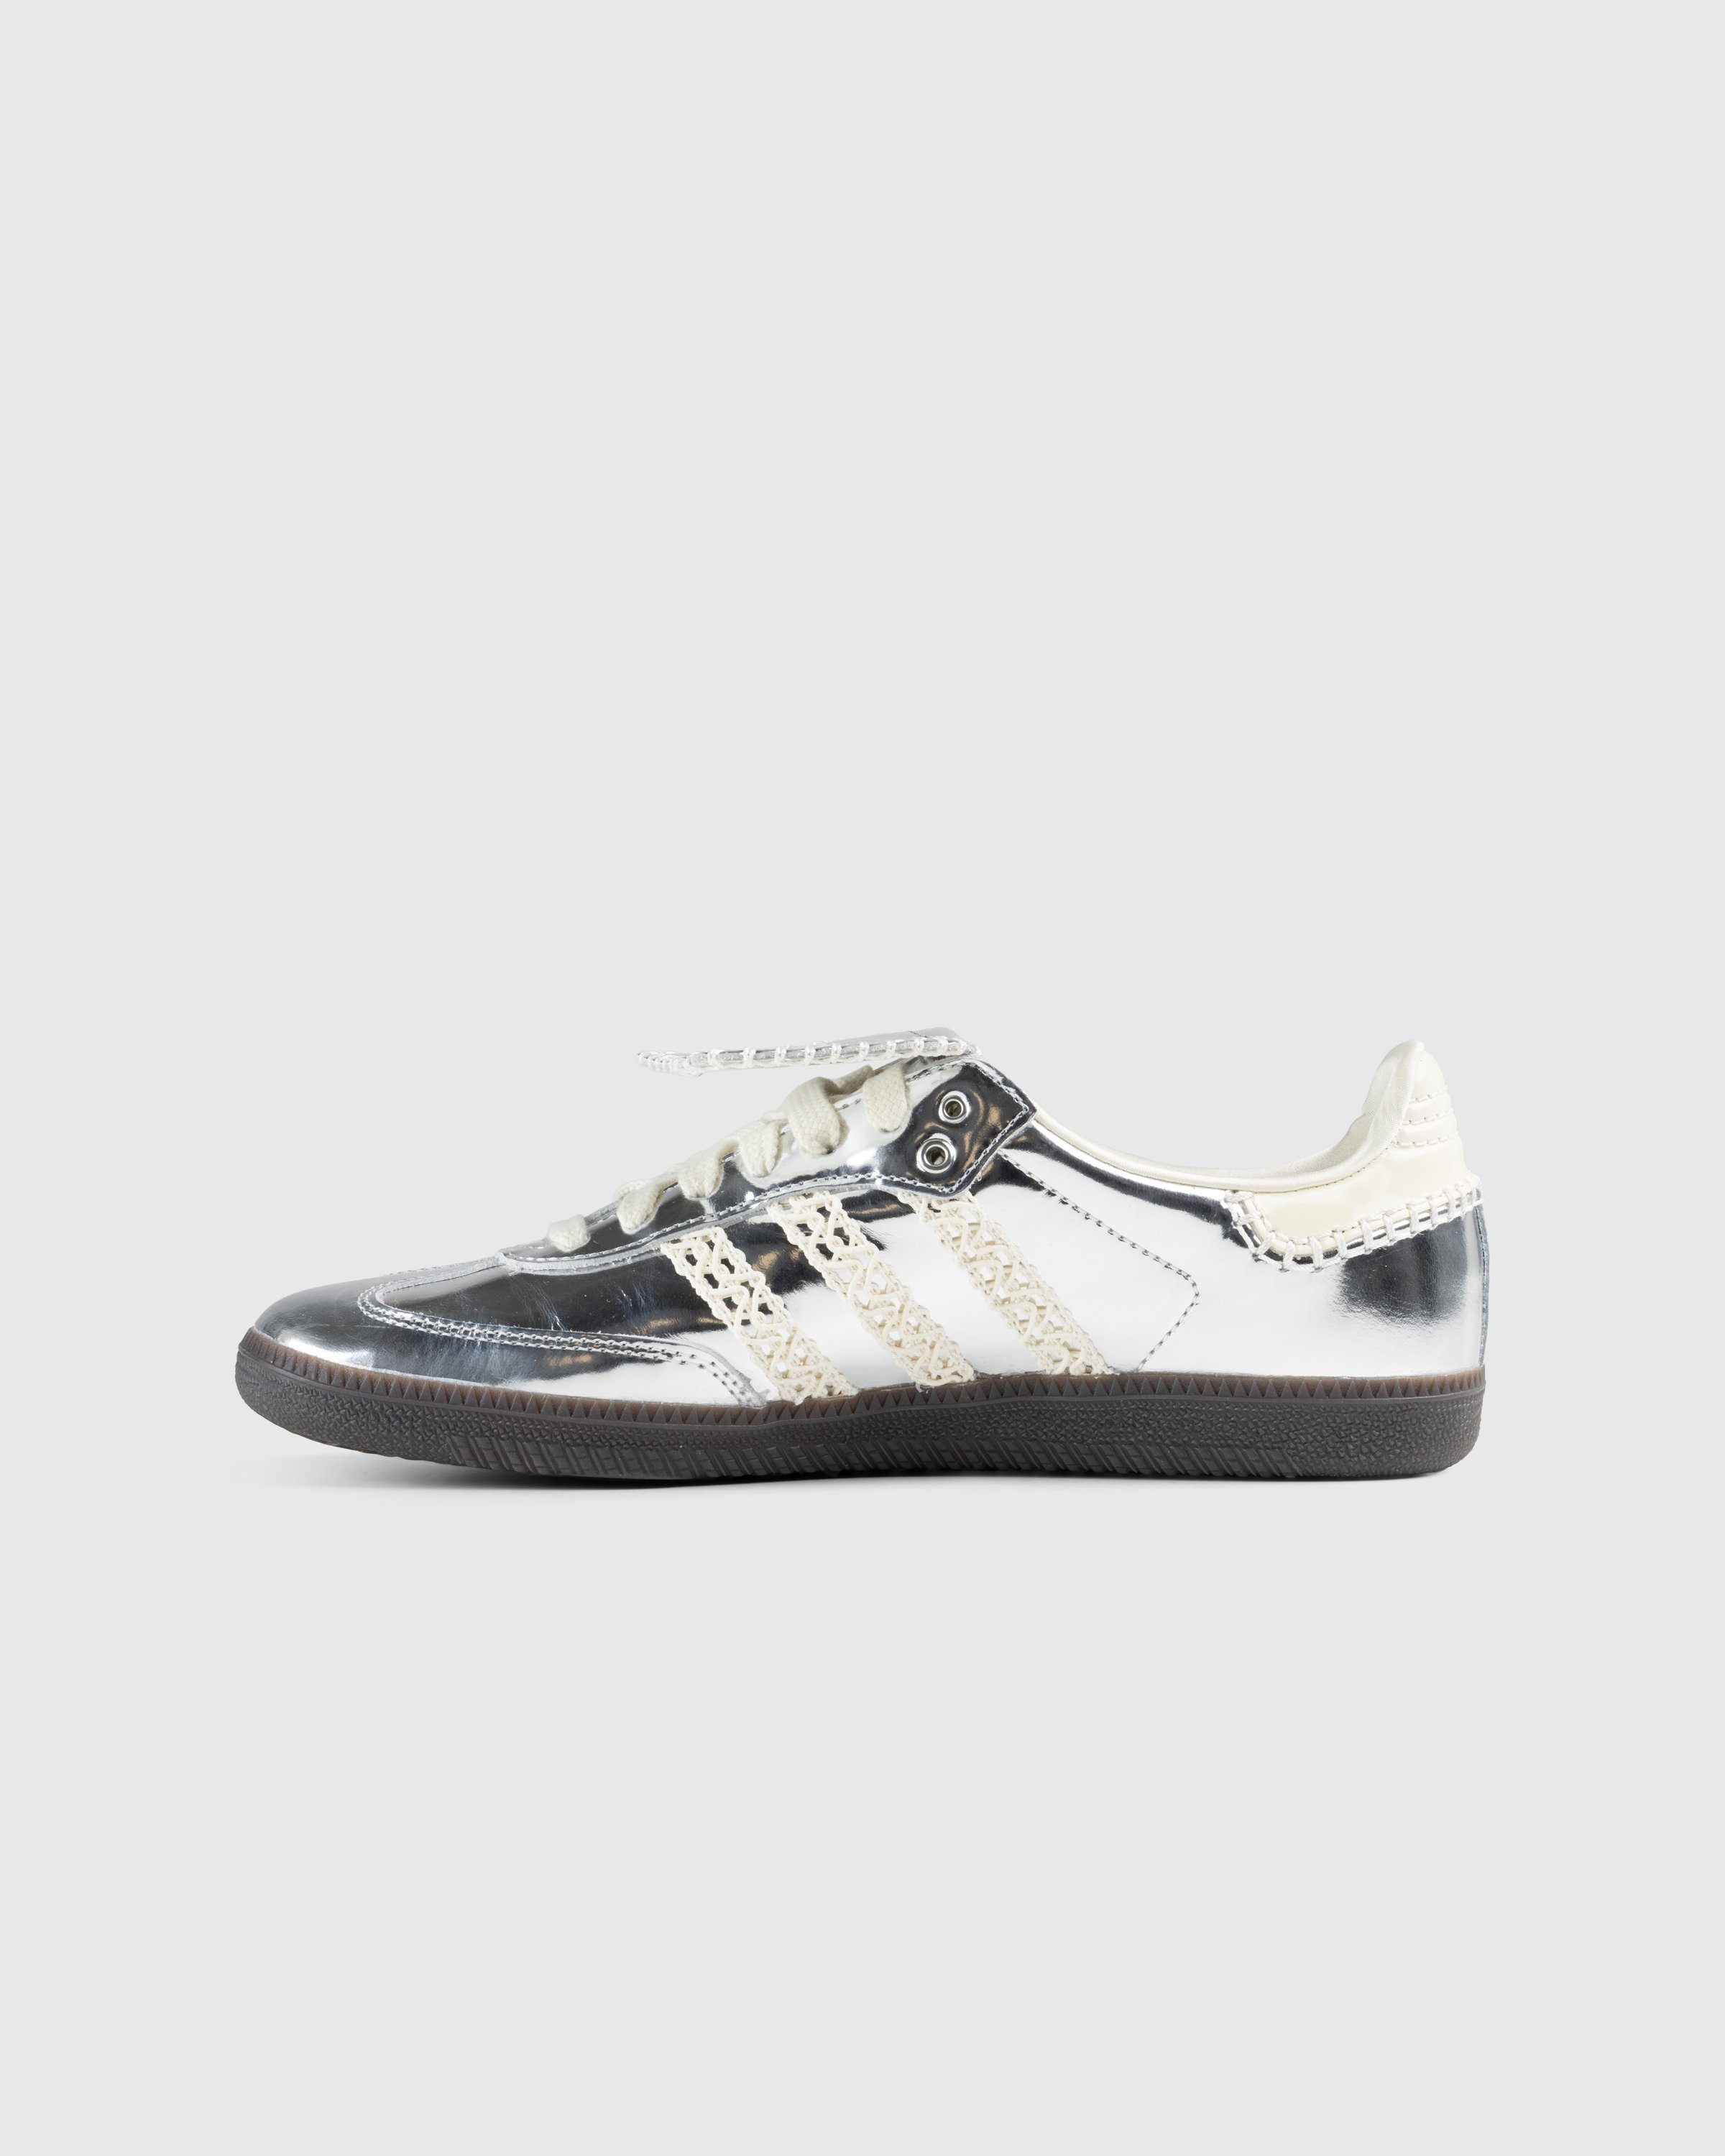 Adidas x Wales Bonner - Samba Metallic Silver/Cream White/Grey - Footwear - Silver - Image 2